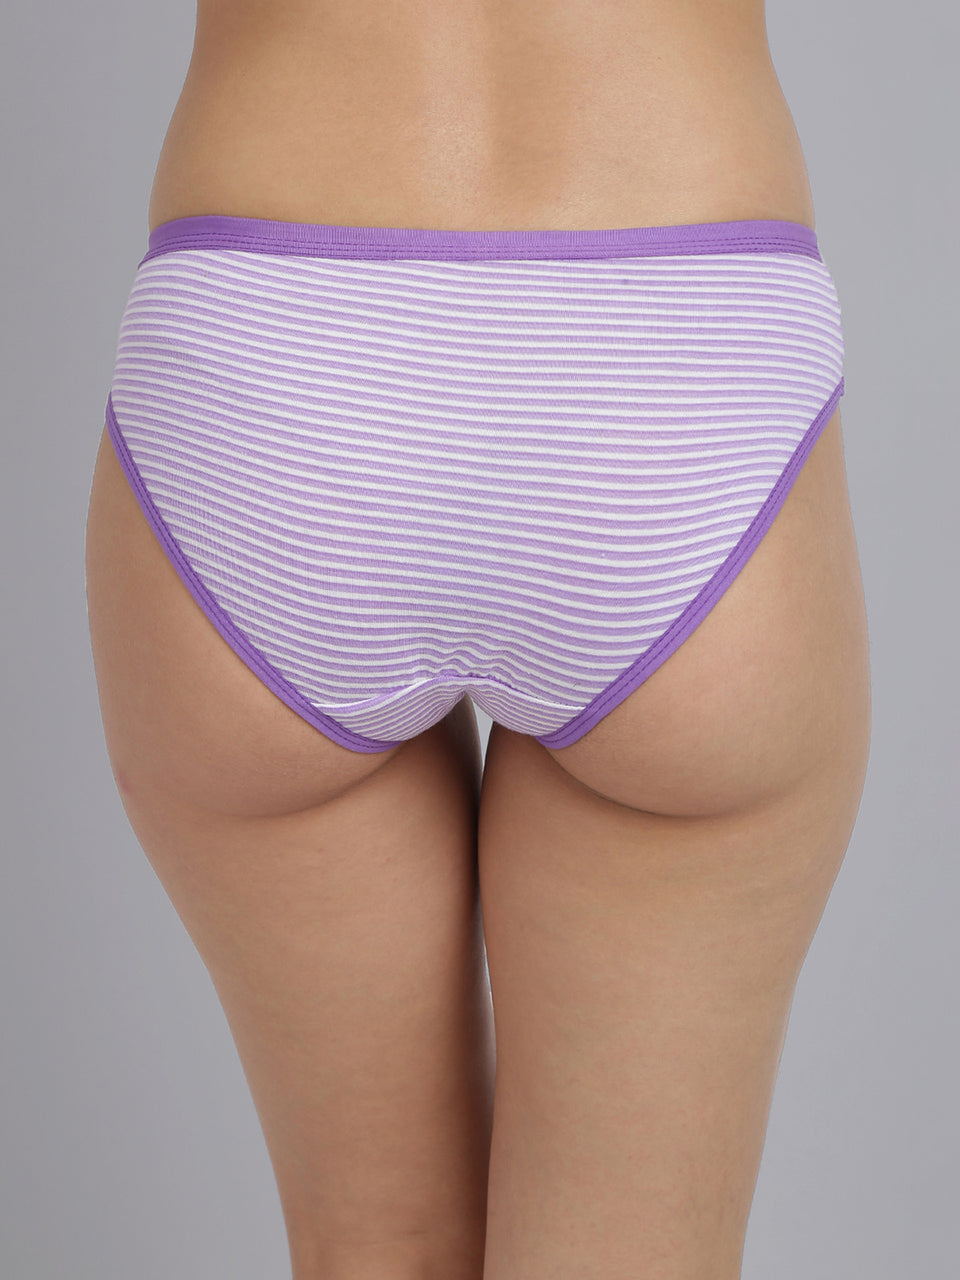 Women panties online  buy women underwear & panties online India – UrGear